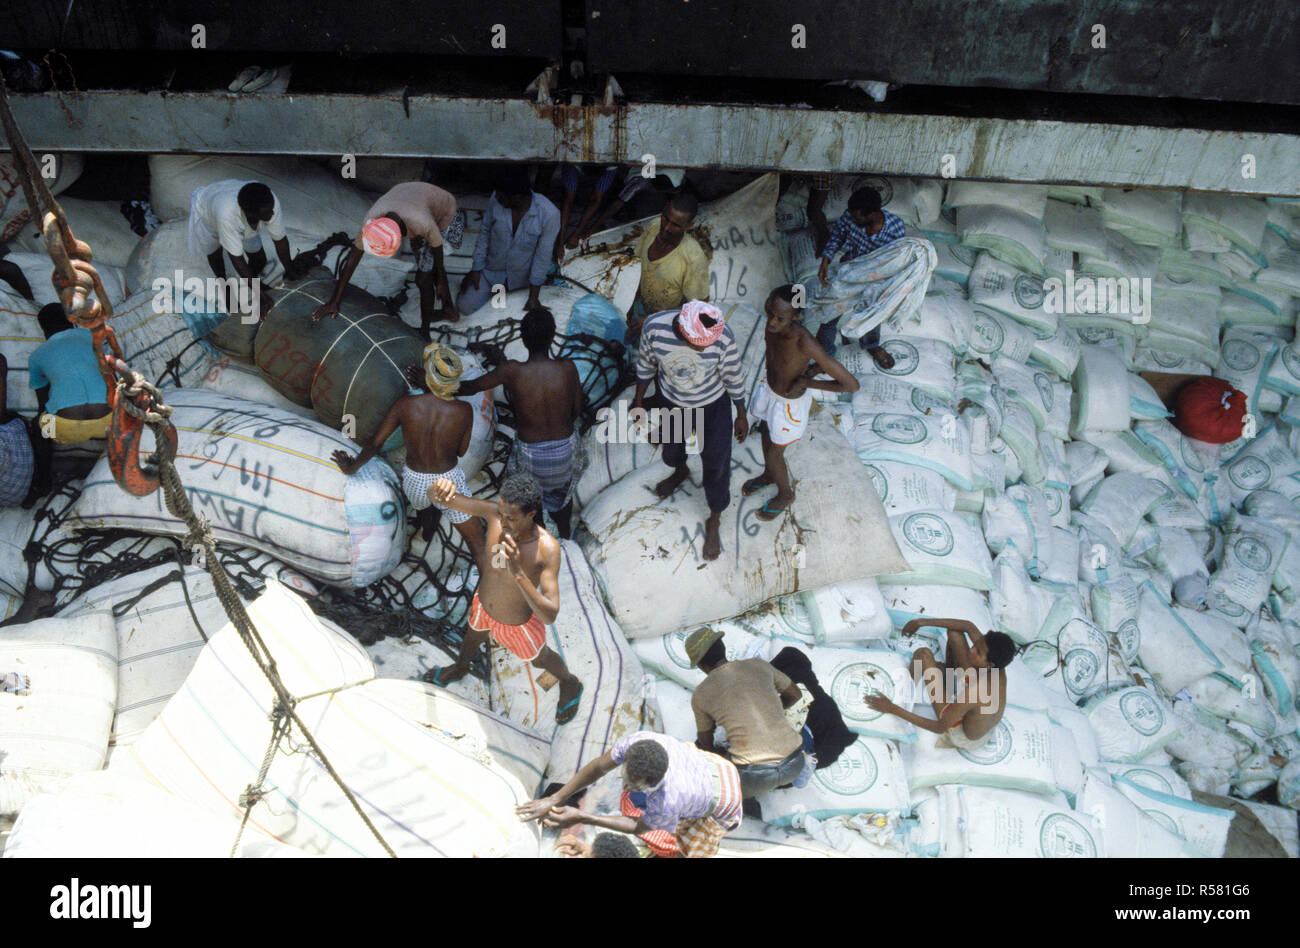 1993 - Le riz et d'autres fournitures de secours reste dans la cale d'un cargo de l'Arabie saoudite comme somaliens à mettre à l'eau au port. Les Saoudiens fournissent des secours à la population somalienne. Banque D'Images